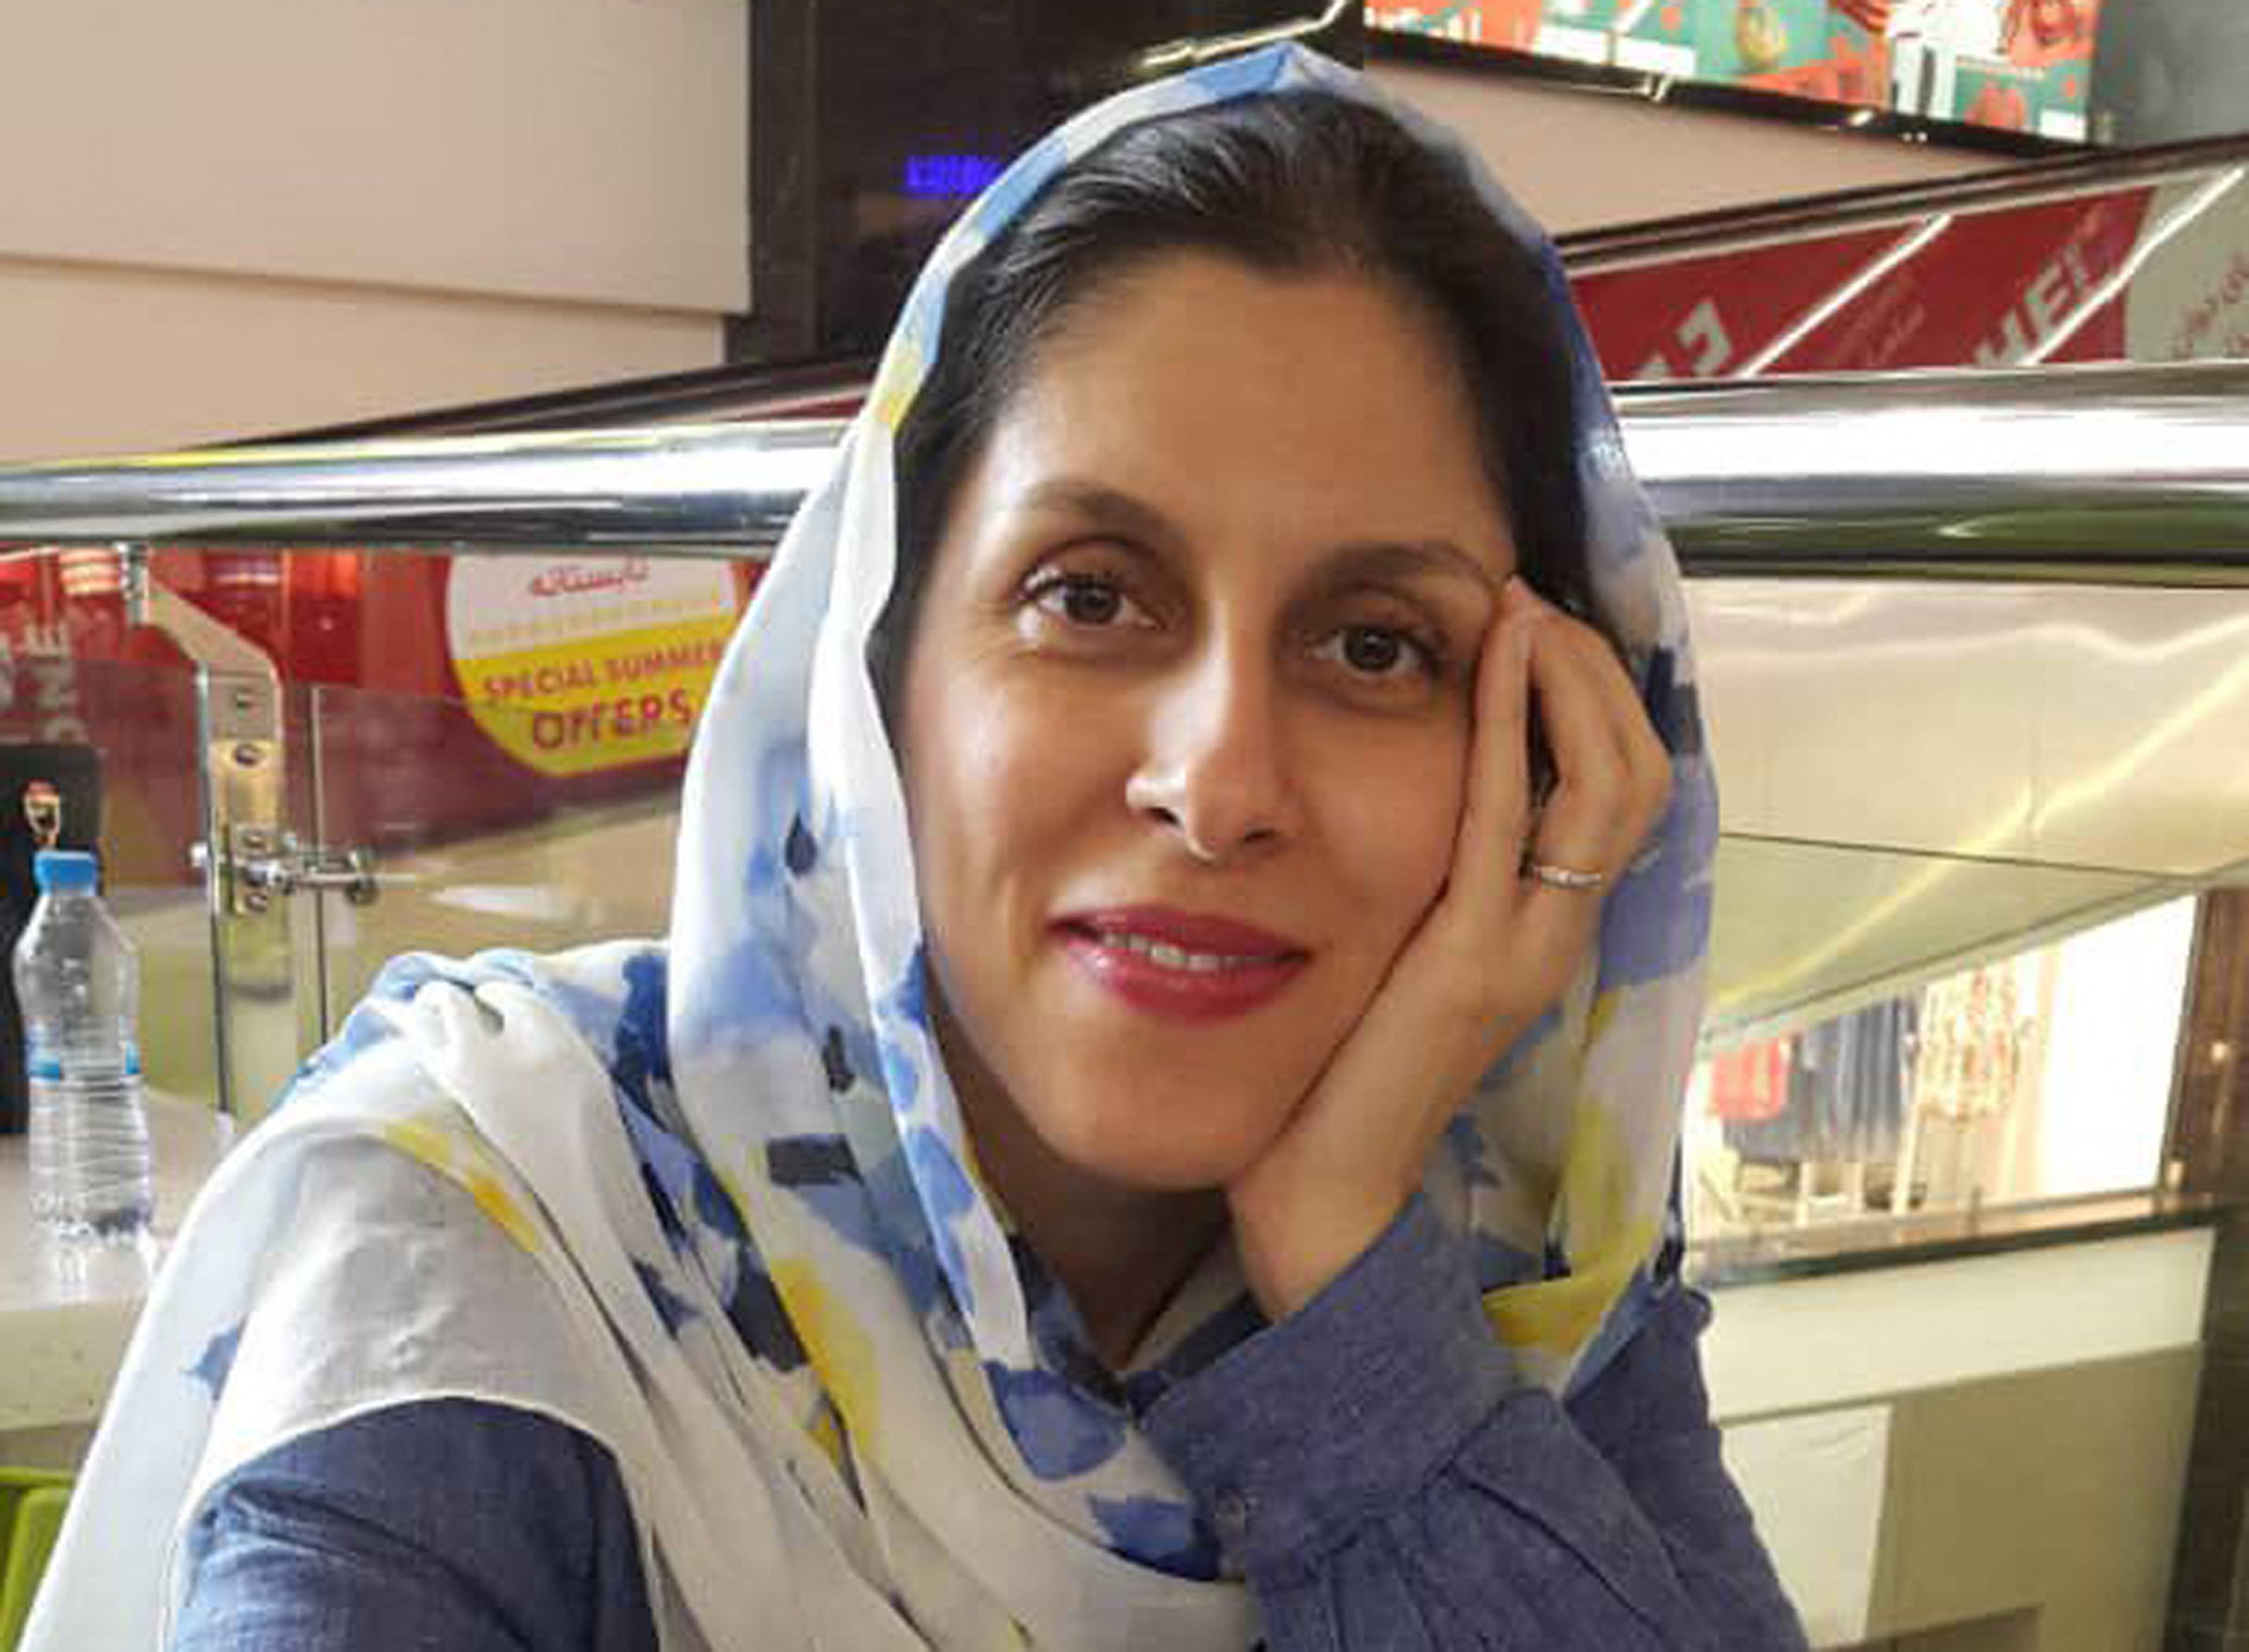 Szabadon engedték Iránban a brit nőt, aki családlátogatásra ment, de kémkedéssel vádolták meg